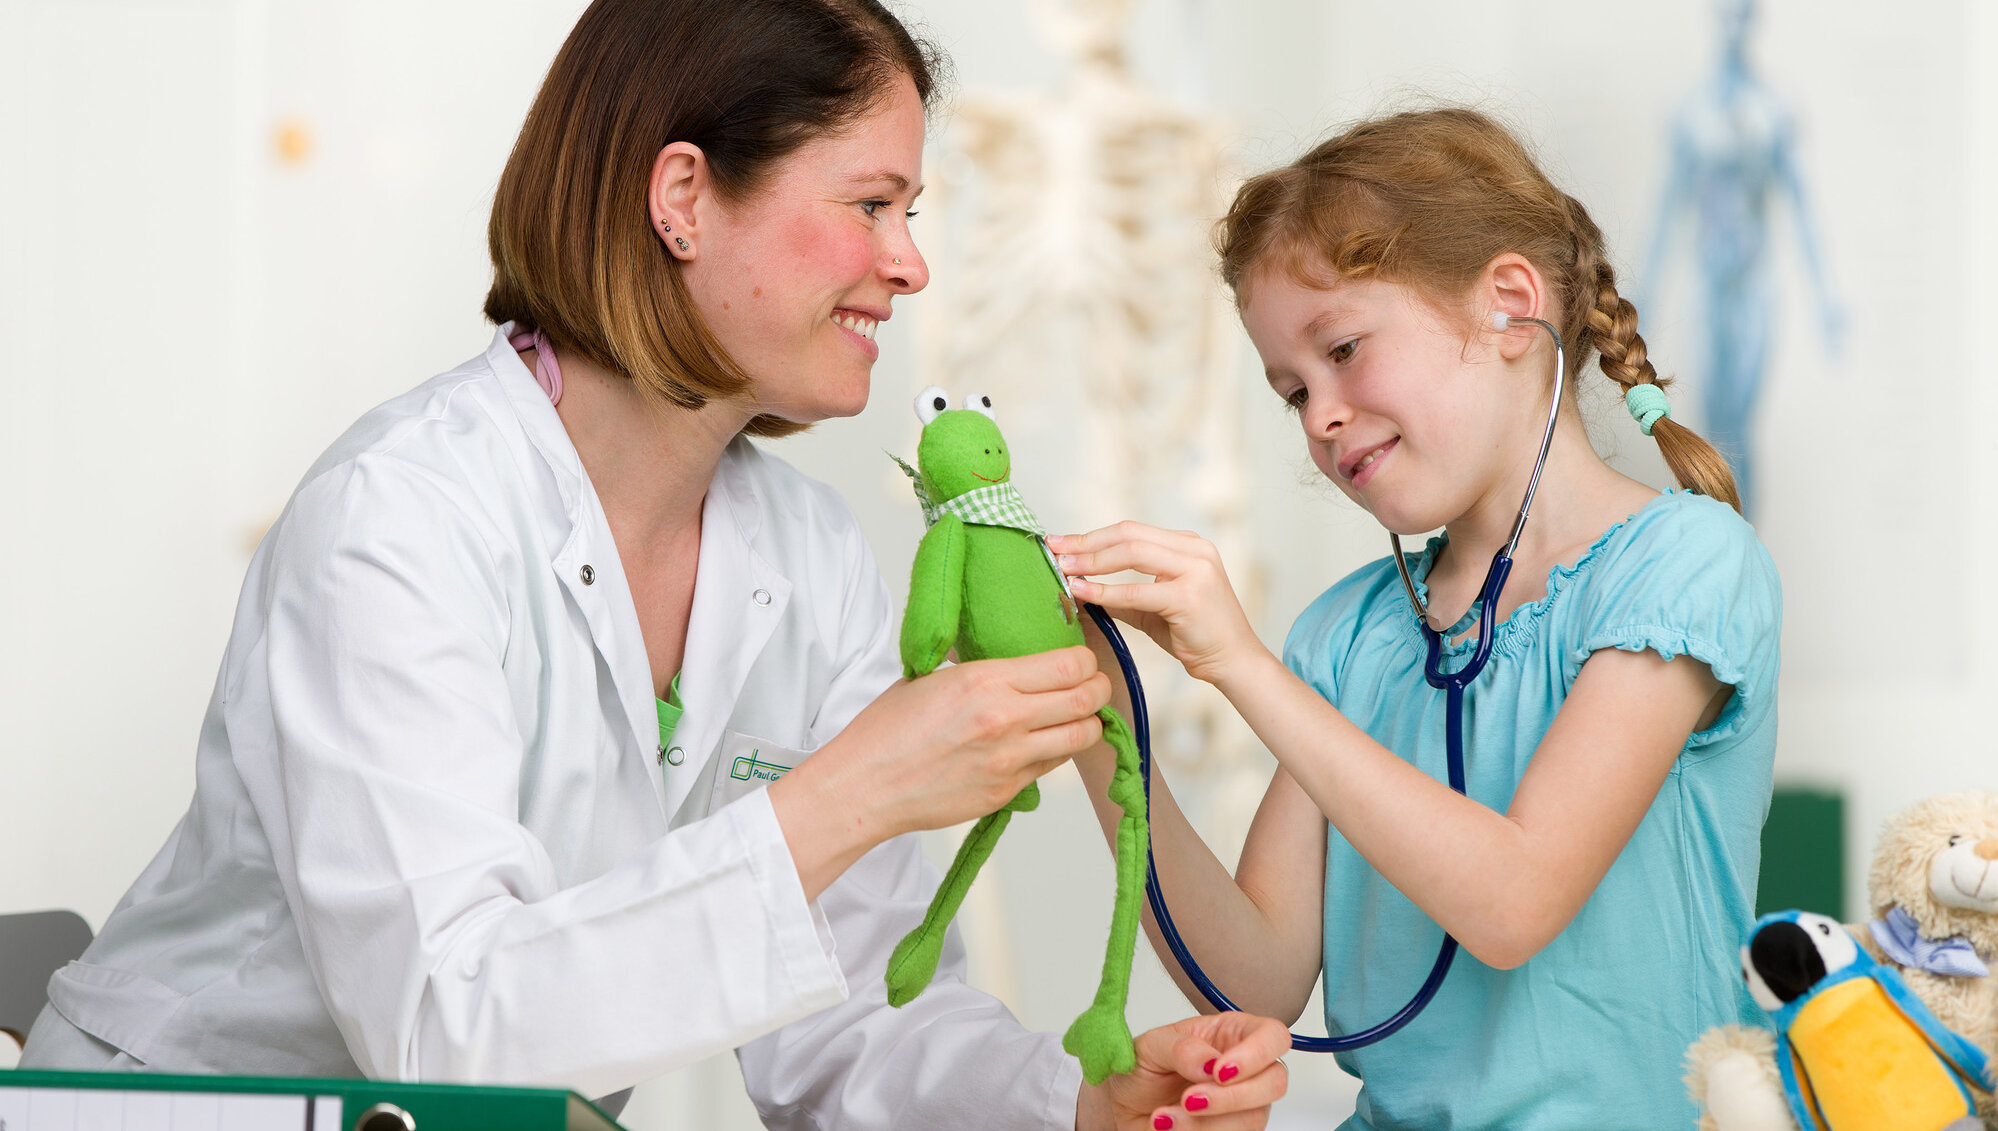 Ein Kind hört ein Kuscheltier mit dem Stethoskop ab. Eine junge Ärztin unterstützt dabei.